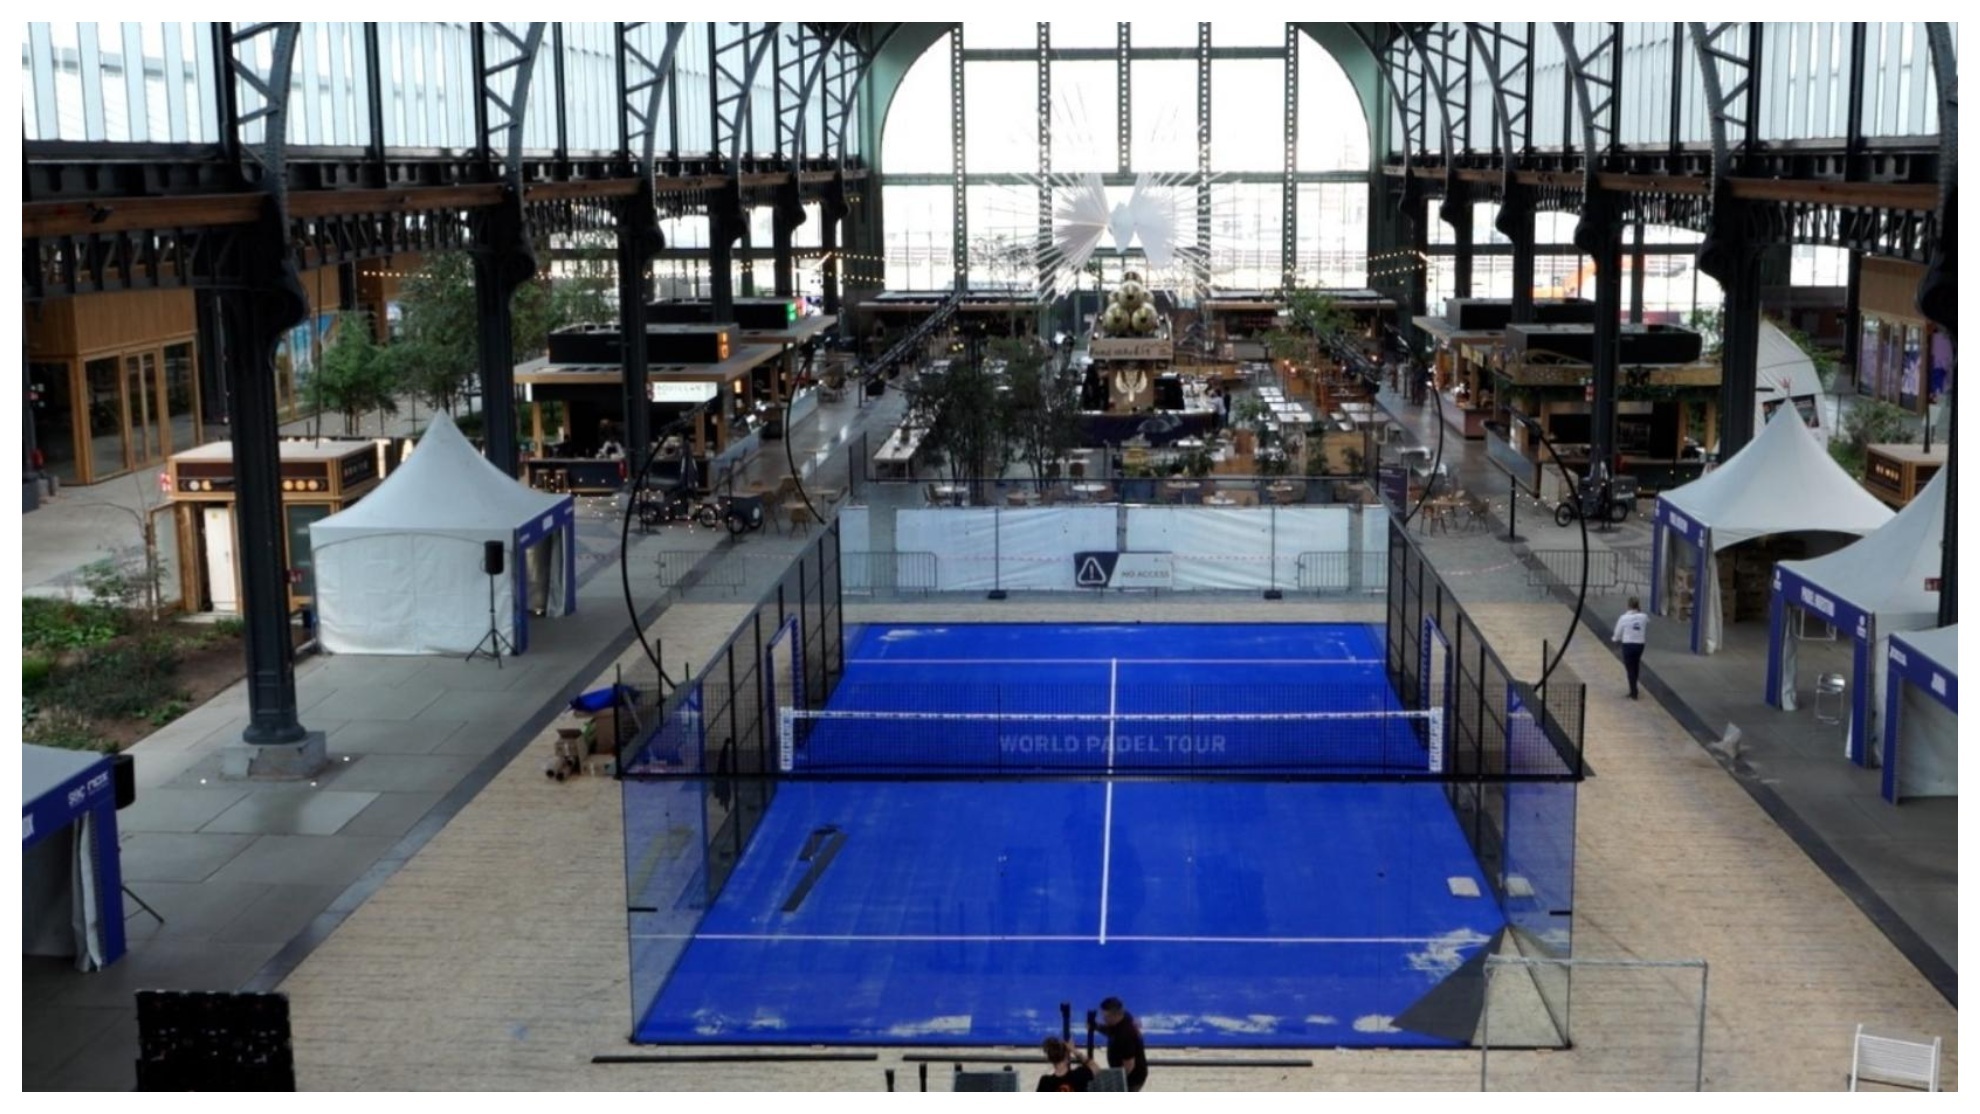 Vista del emblemático escenario donde se disputará el torneo en Bruselas.